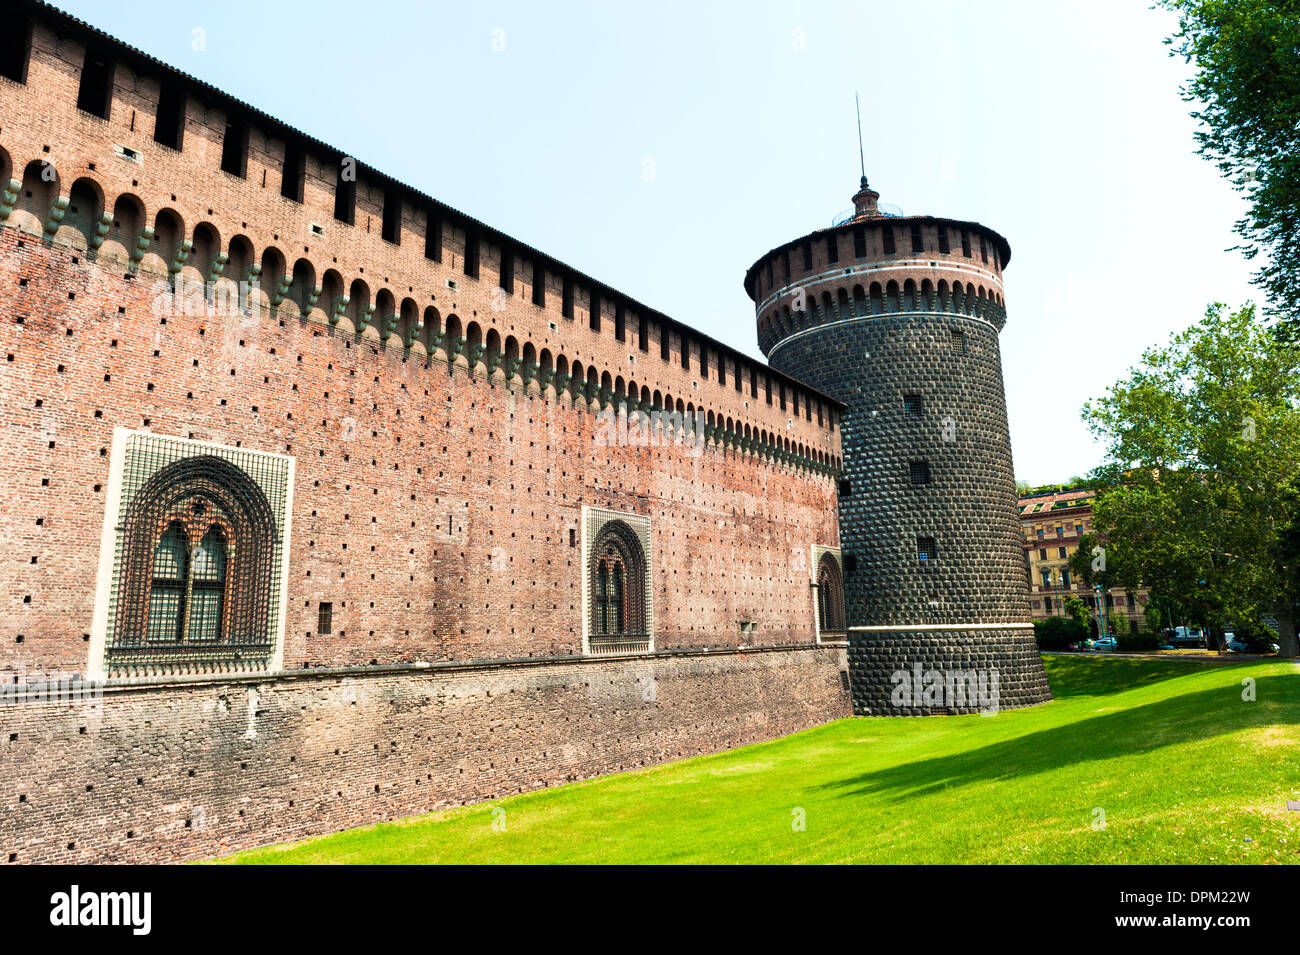 Castello Sforzesco in Milan, Italy Stock Photo